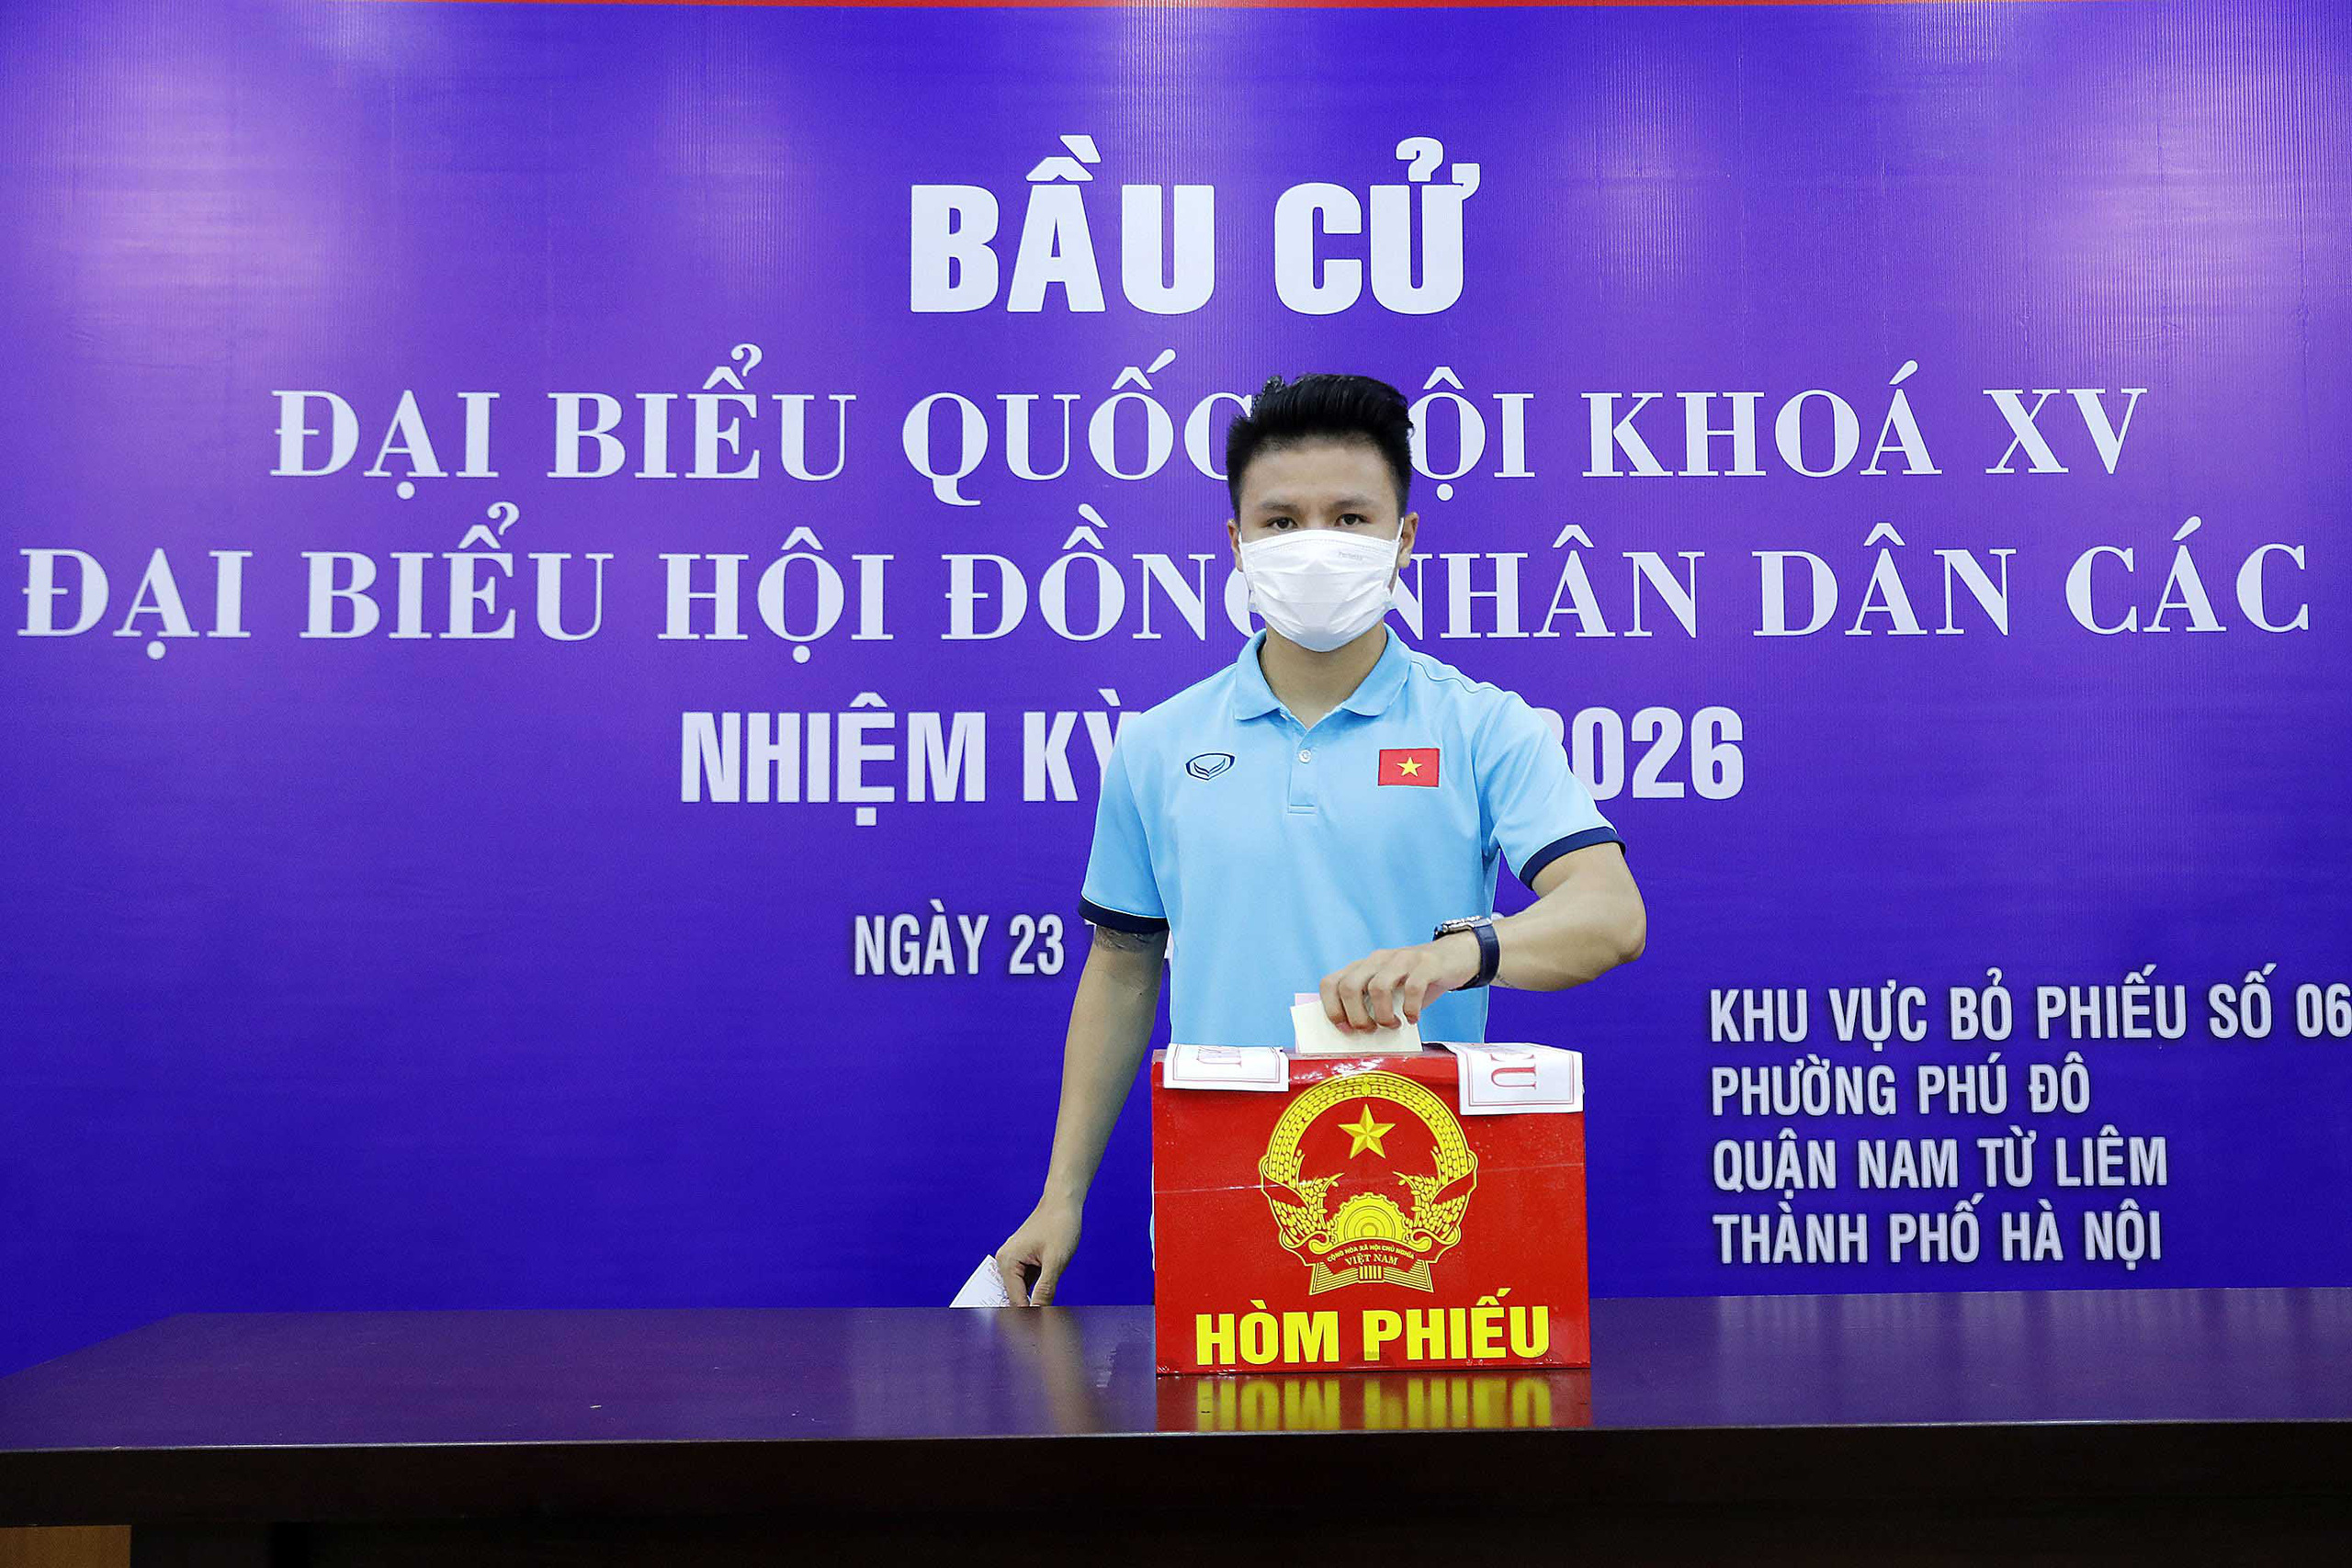 Cận cảnh các tuyển thủ bóng đá Việt Nam vui tươi bỏ phiếu bầu cử - Ảnh 3.